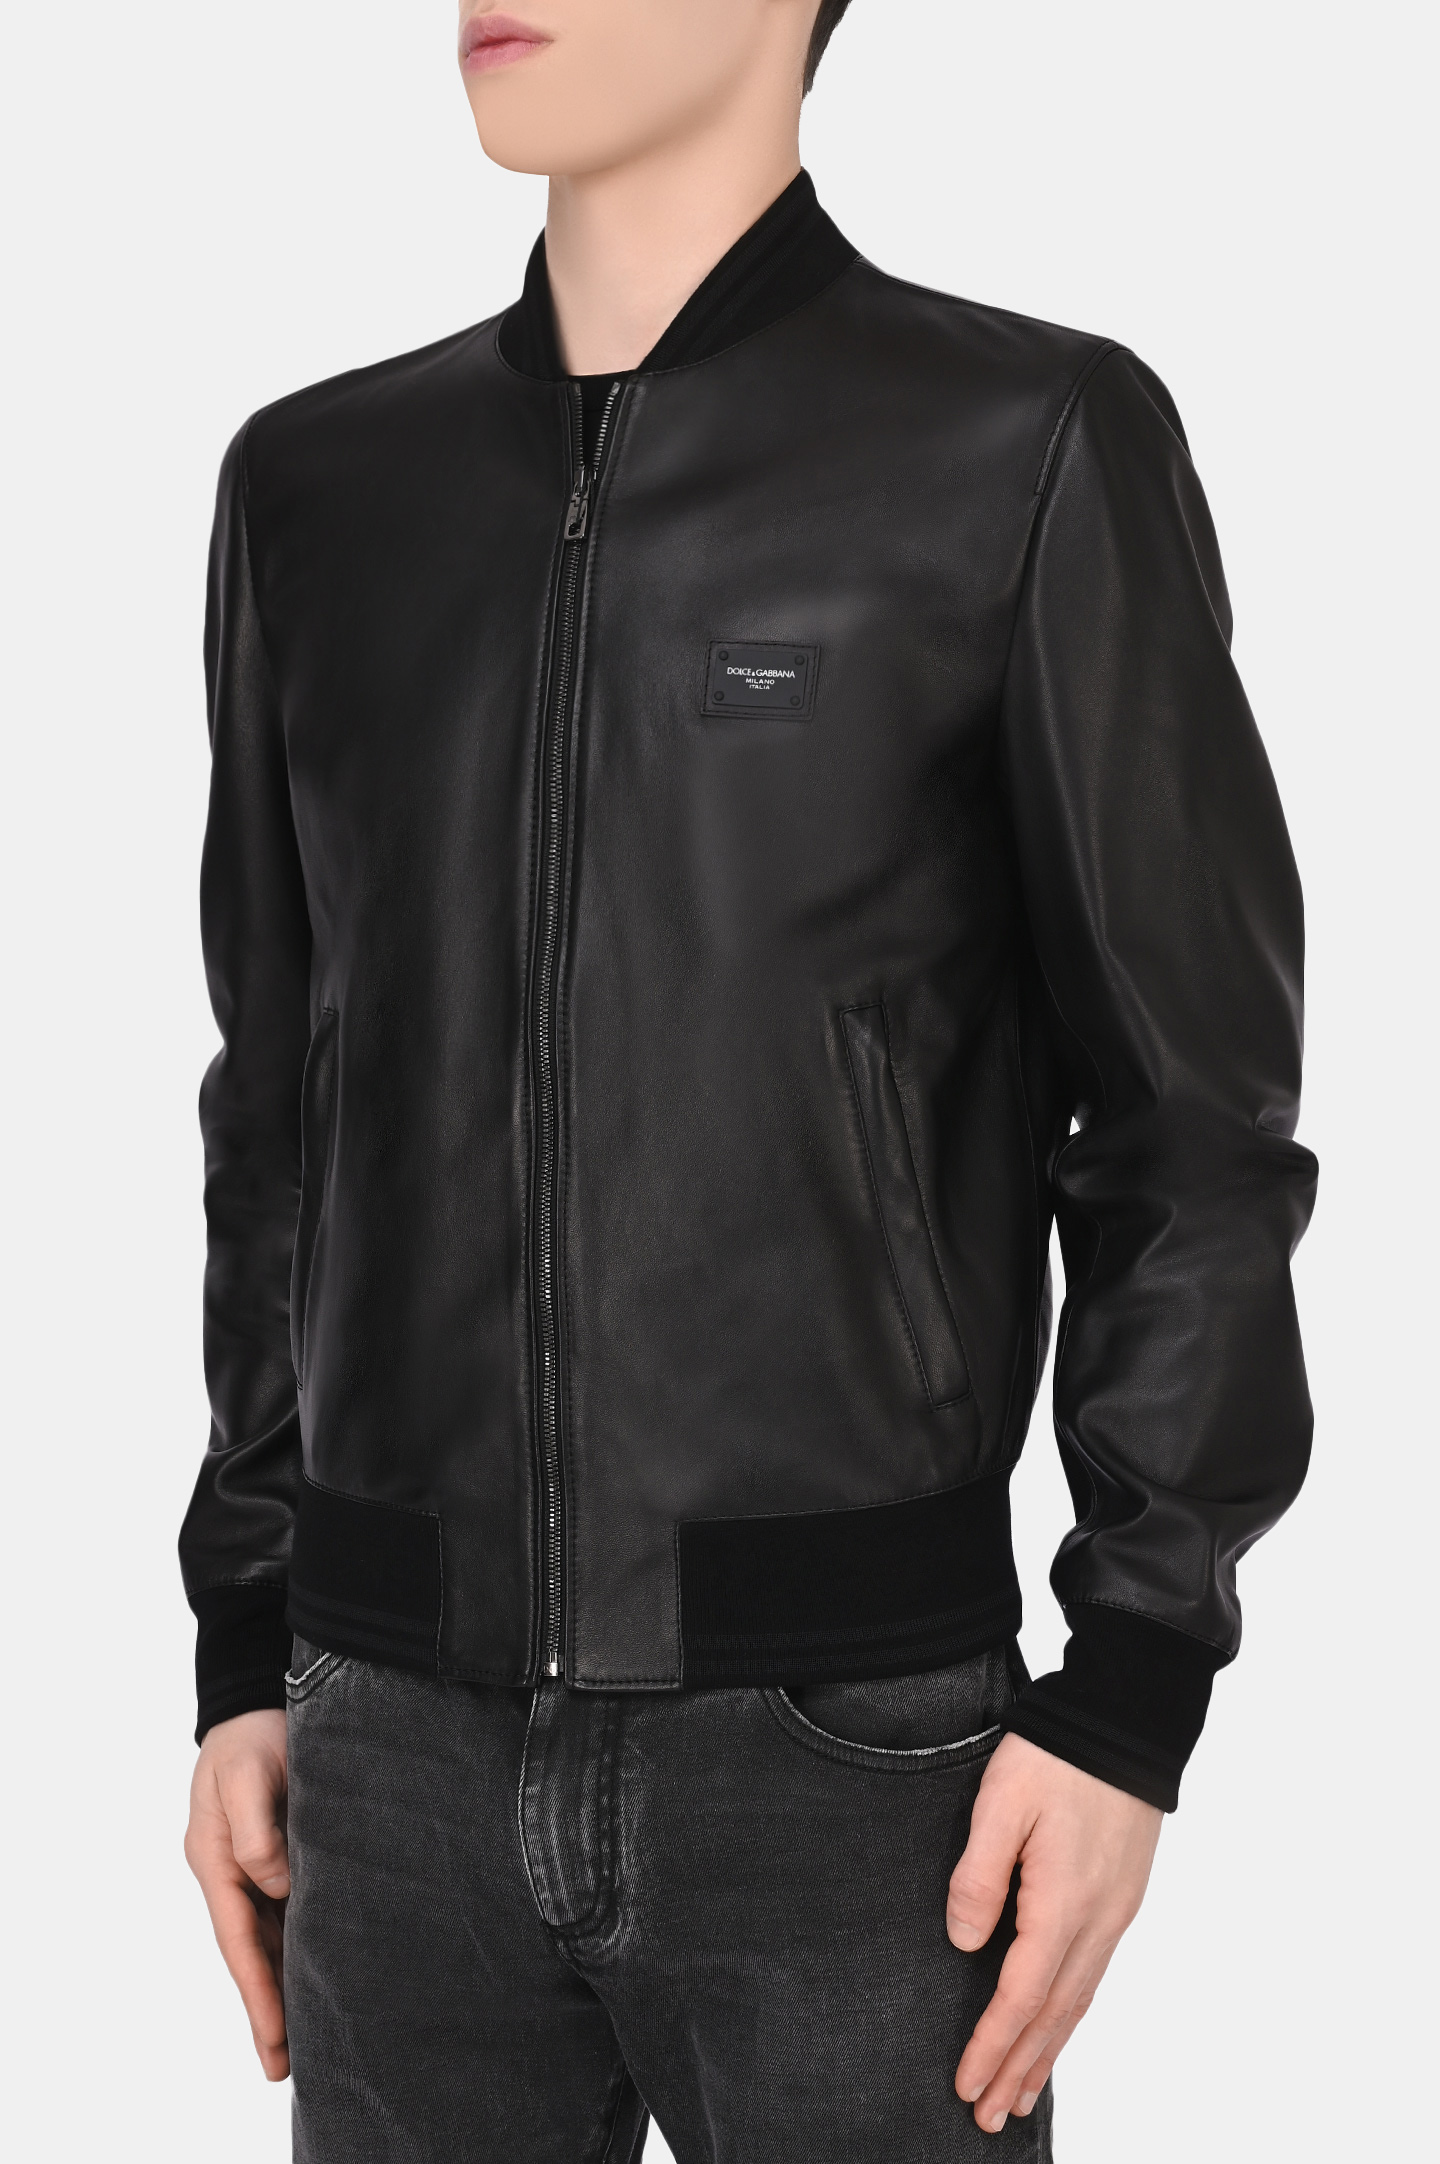 Куртка DOLCE & GABBANA G9PB9L FUL89, цвет: Черный, Мужской